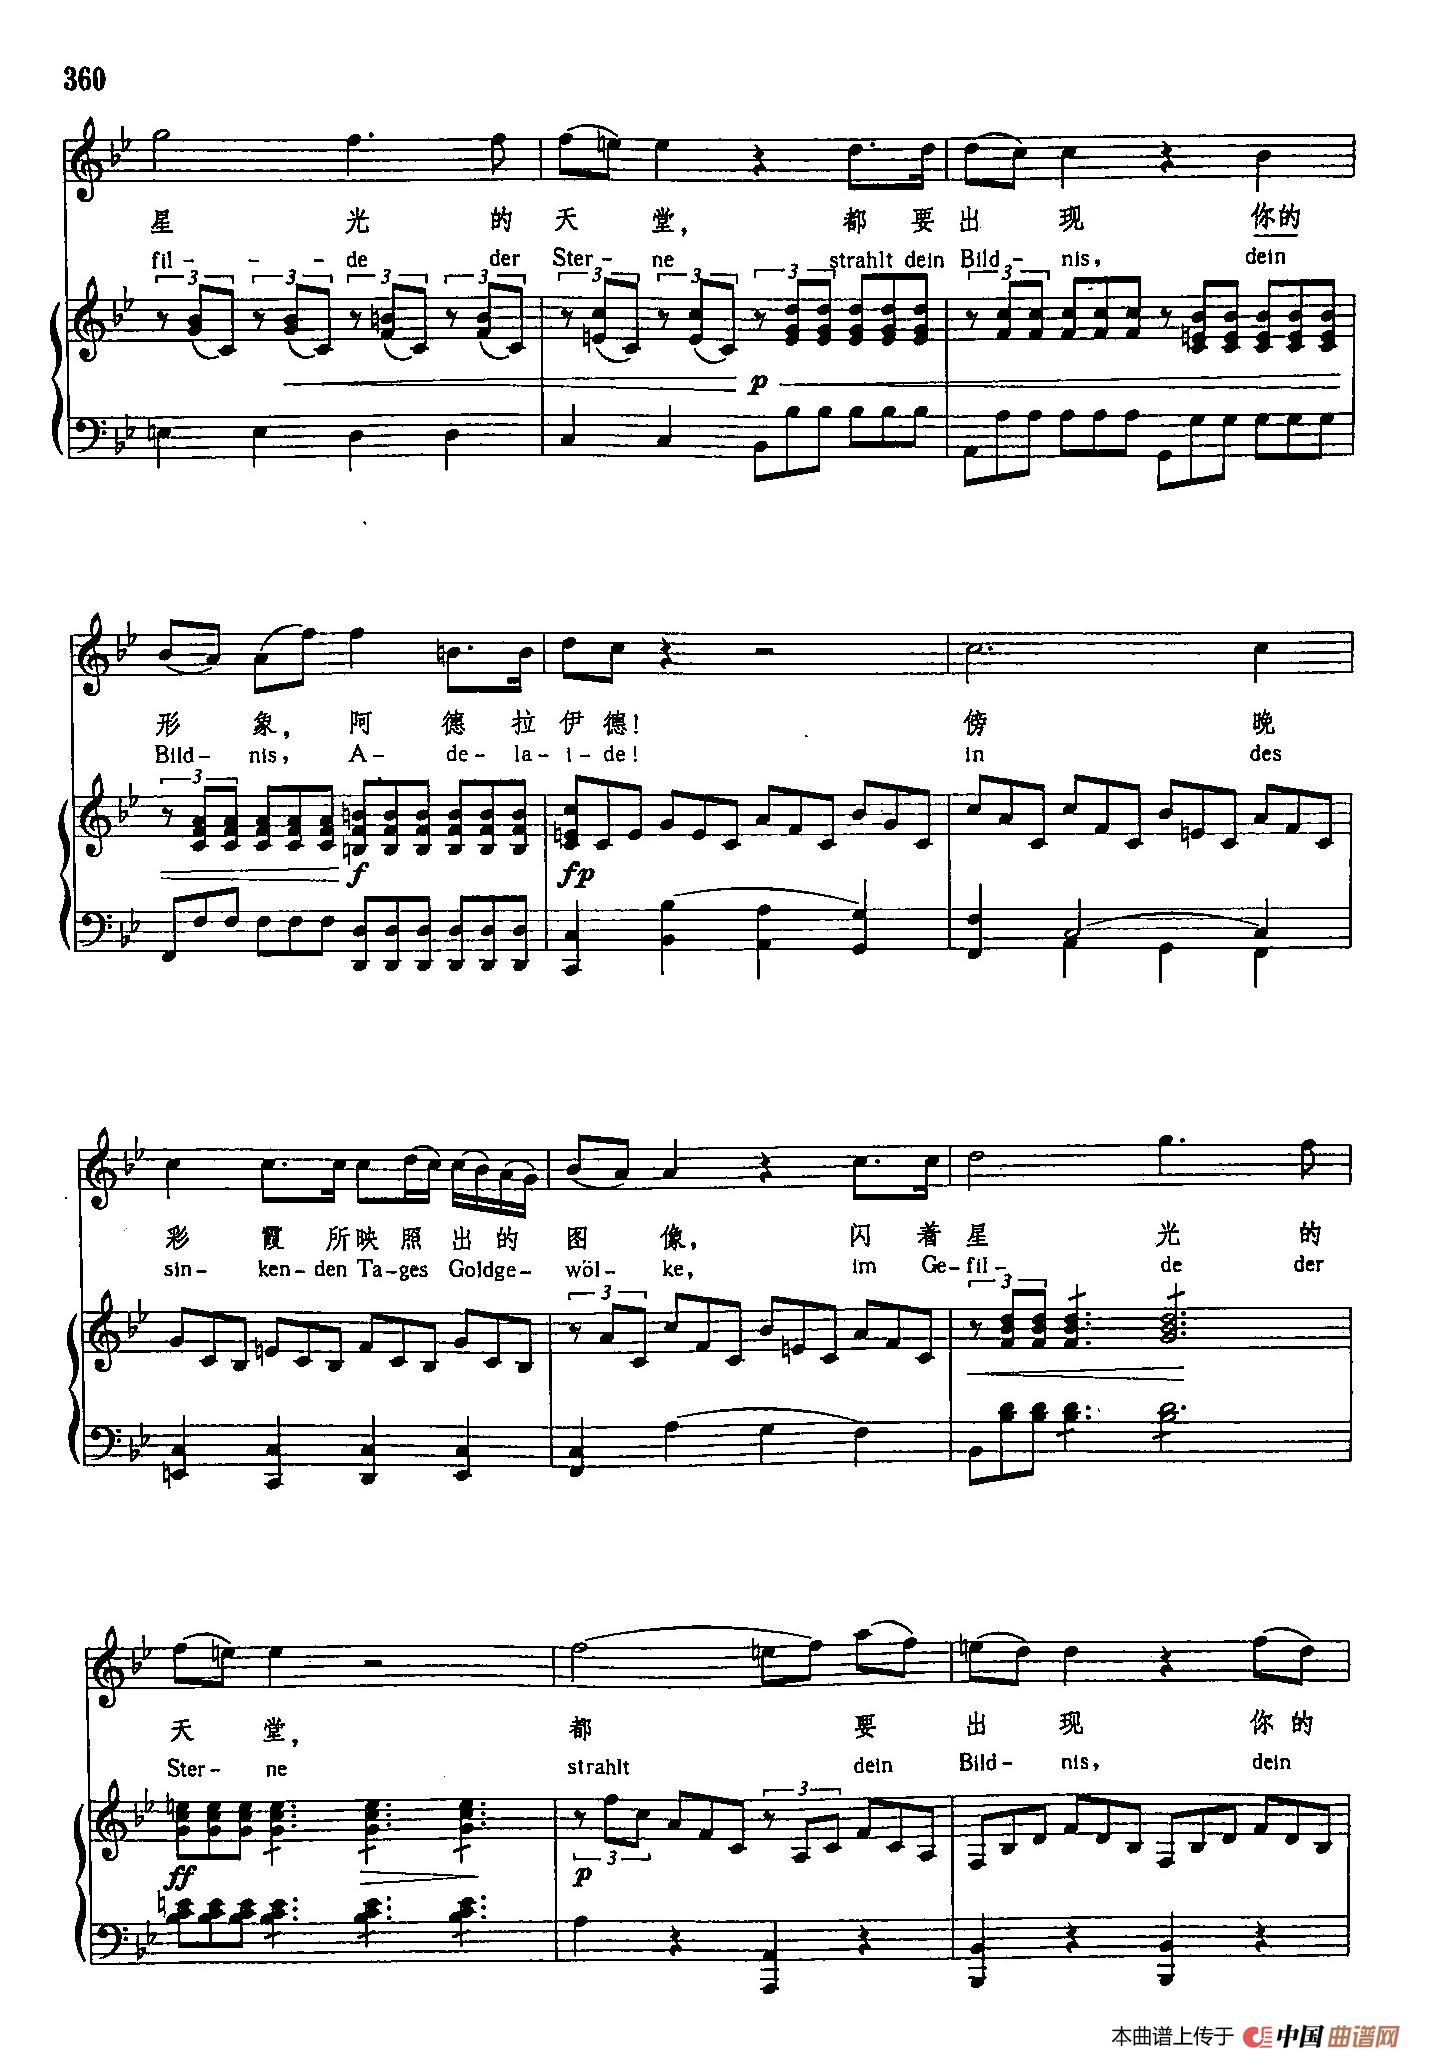 声乐教学曲库3-[德]75阿德拉伊得（正谱） (1)_原文件名：声乐教学曲库3-[德]75阿德拉伊得（正谱）3.jpg